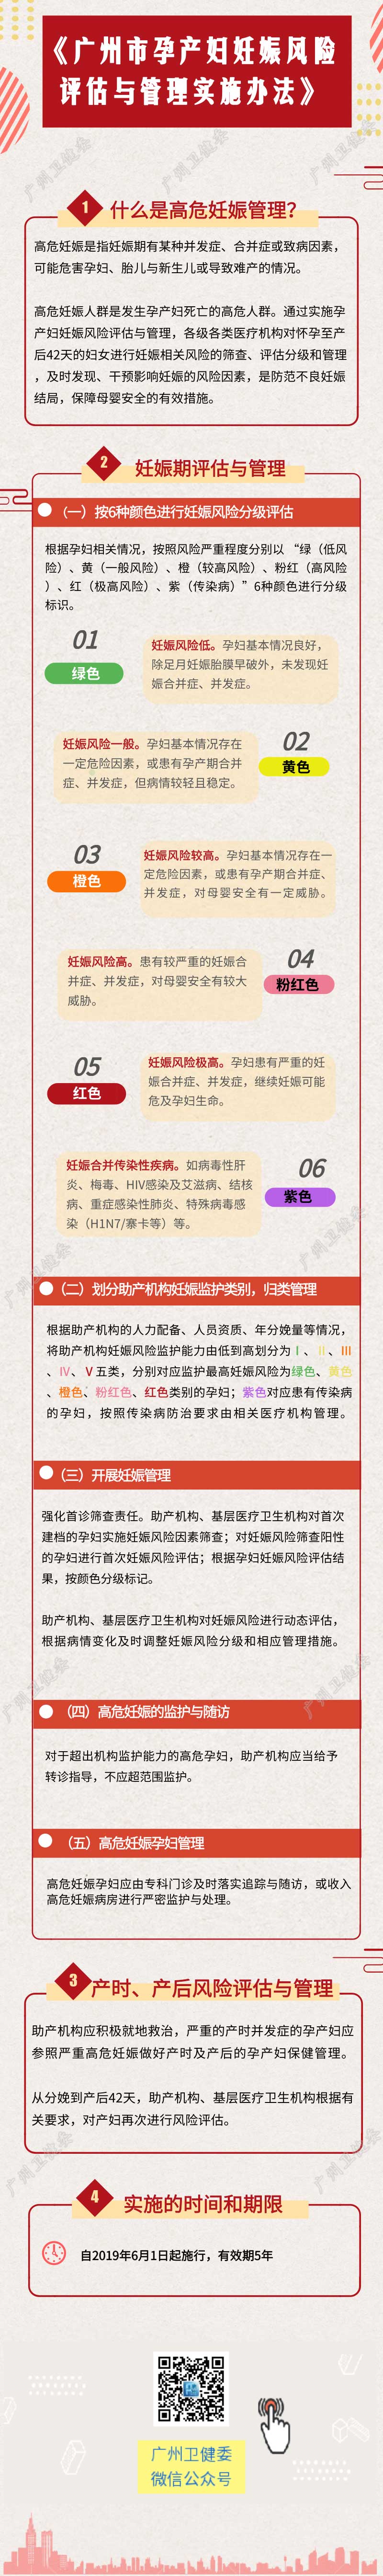 一图读懂《广州市孕产妇妊娠风险评估与管理实施办法》.jpg